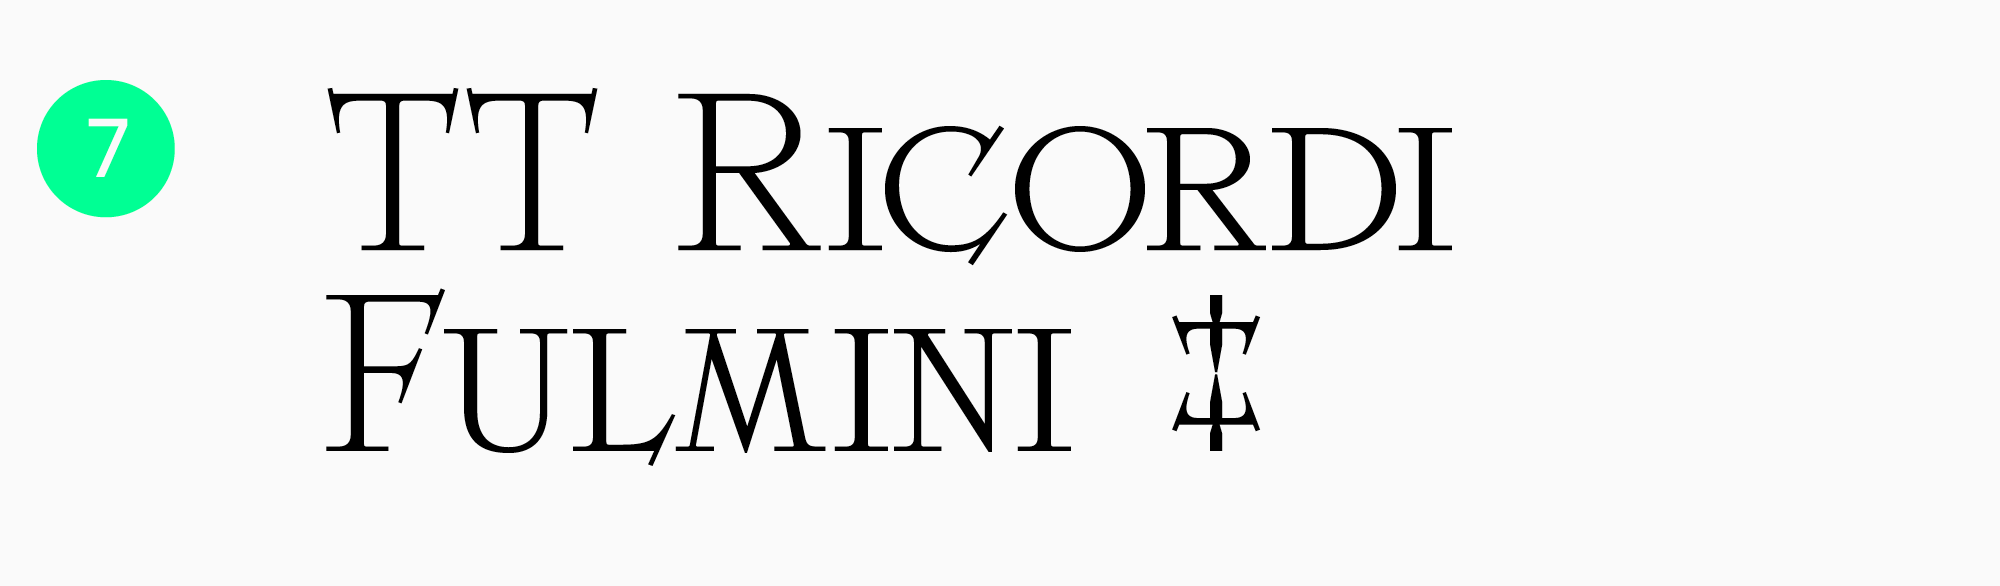 TT Ricordi Fulmini постерные шрифты